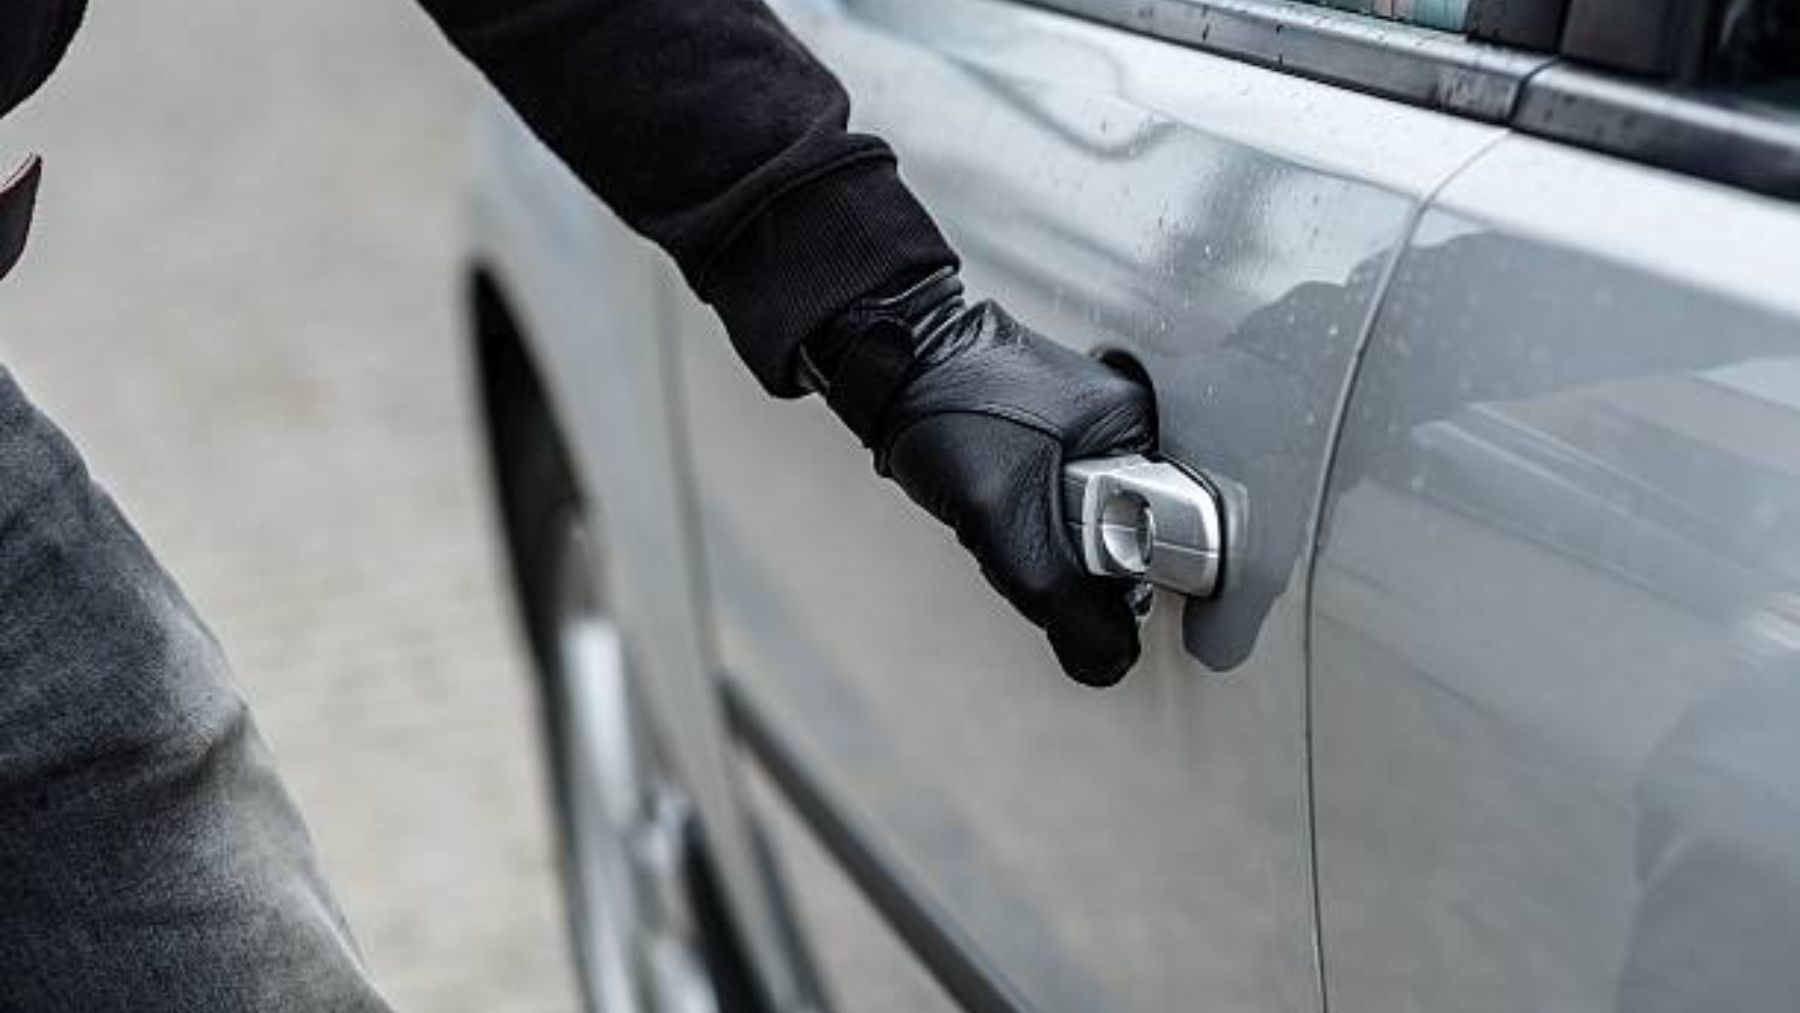 Descubre los trucos de los ladrones para robar coches